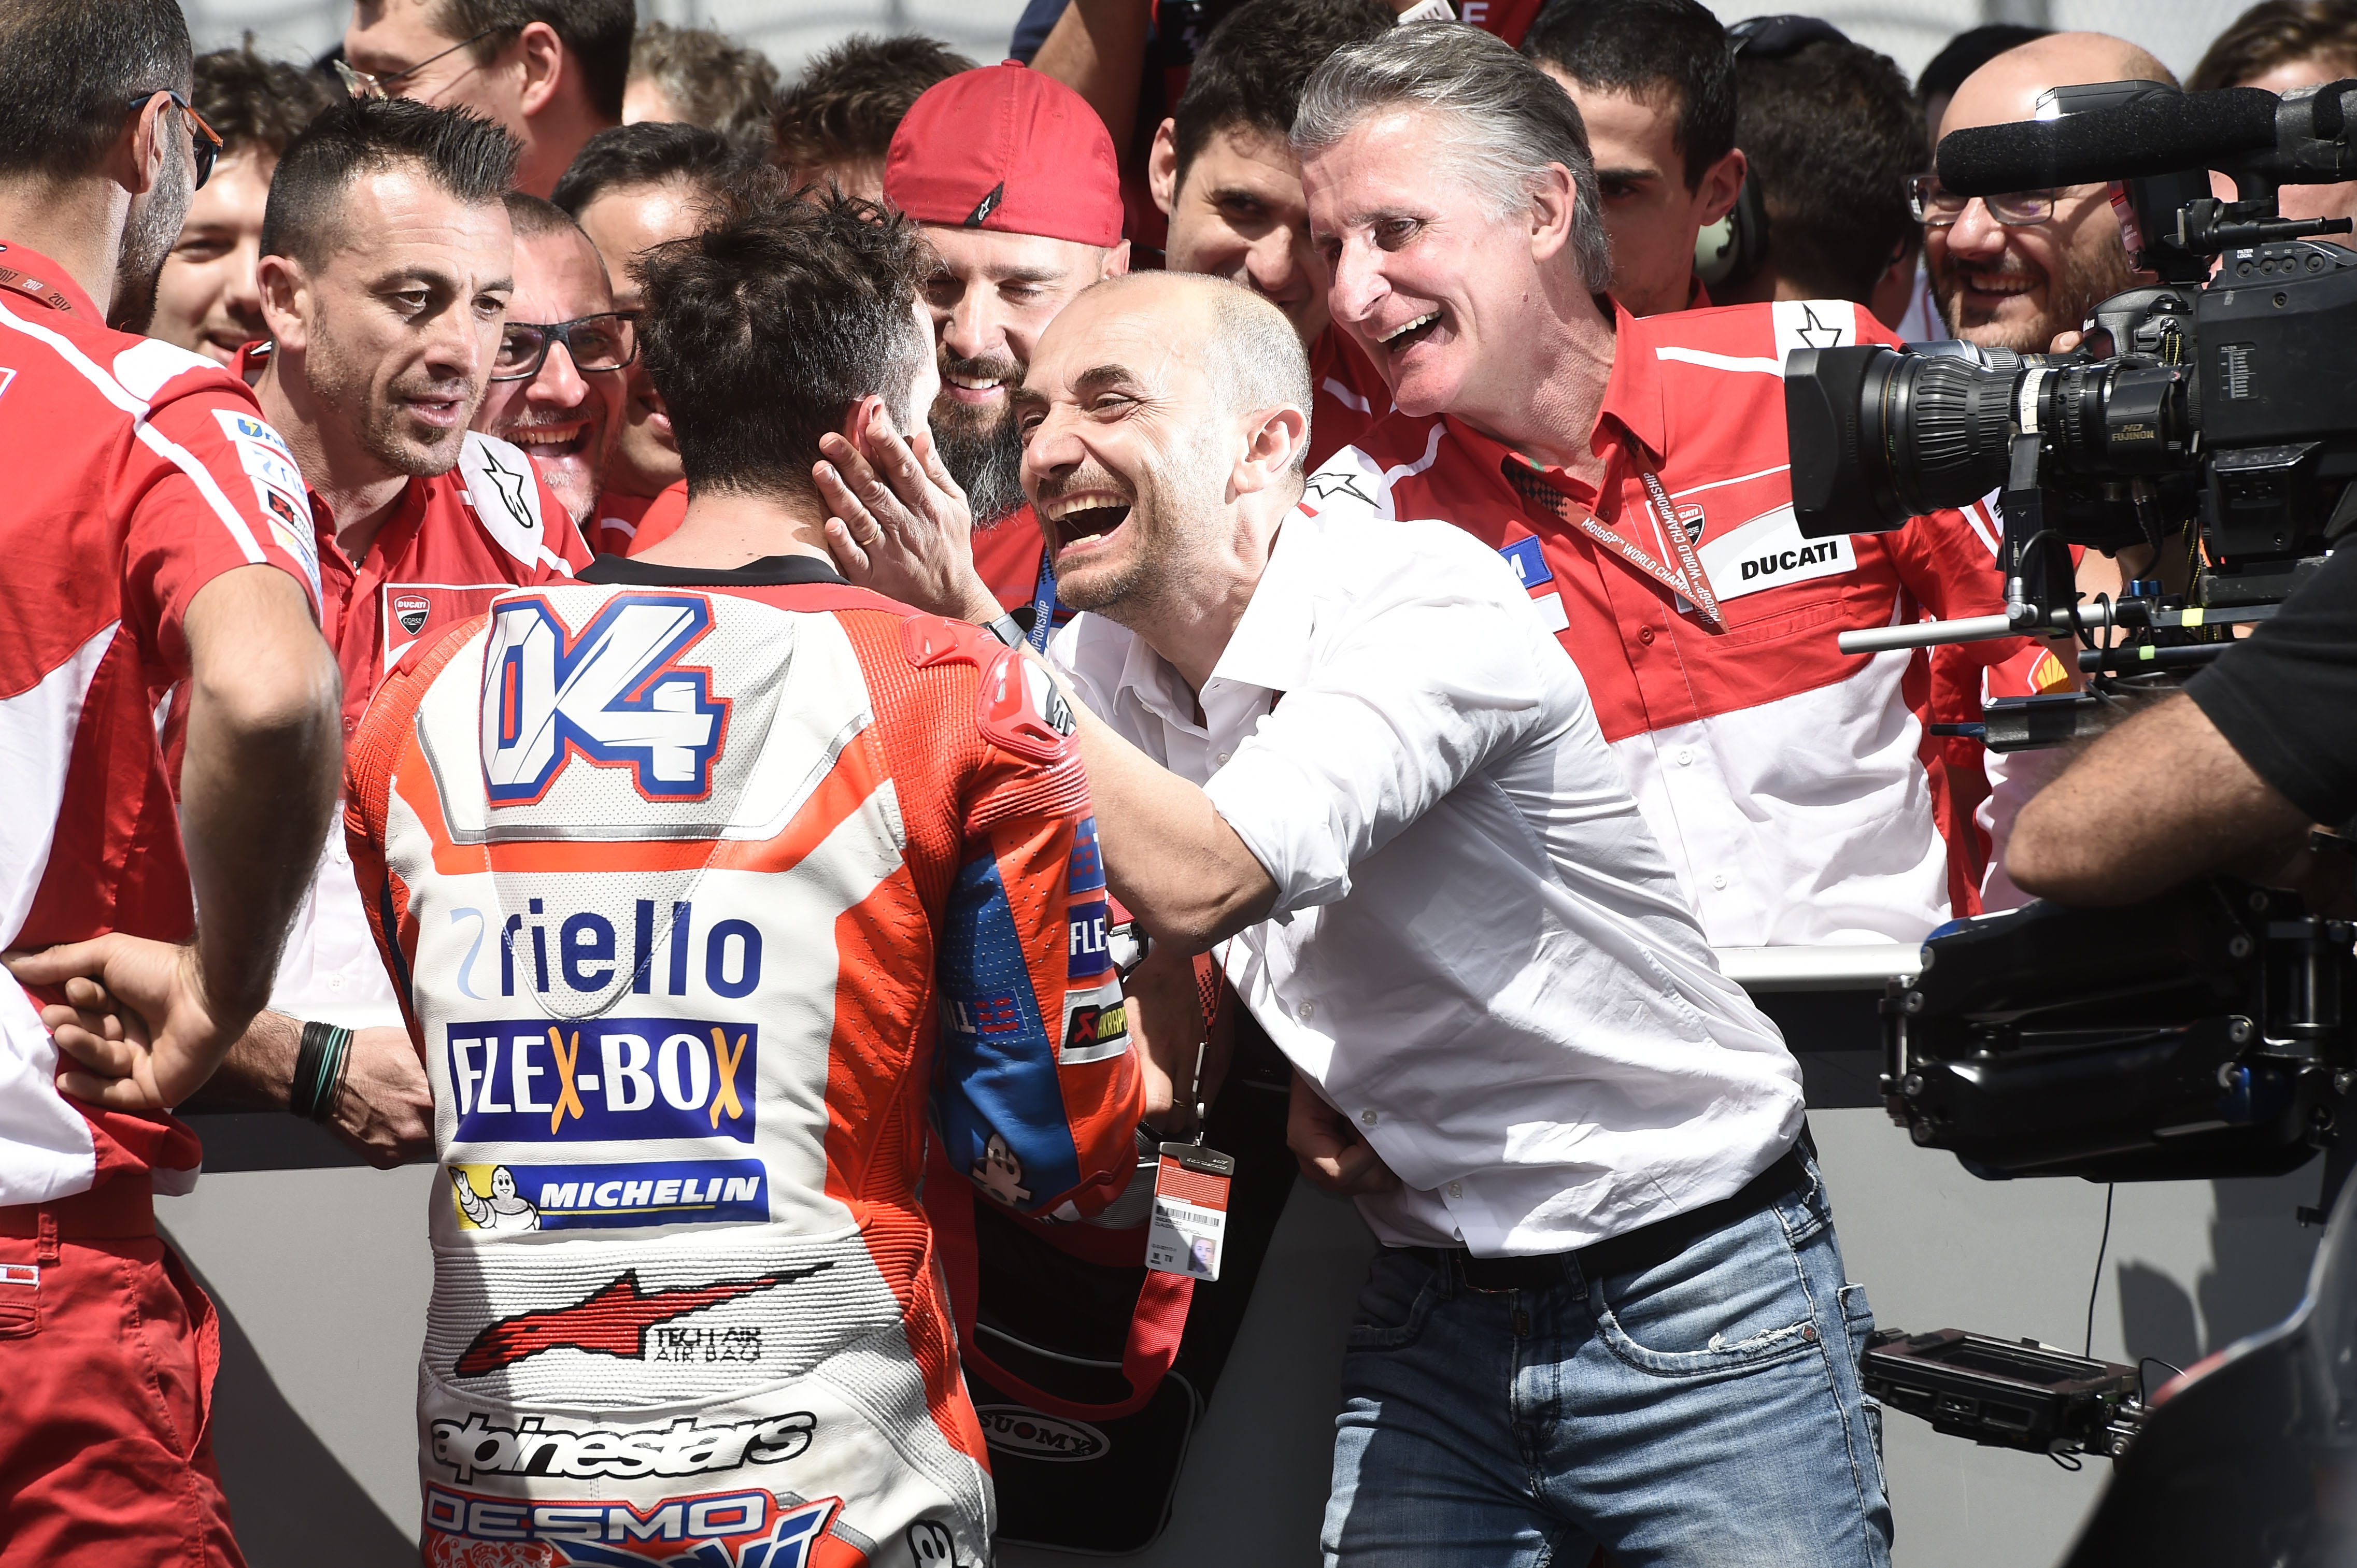 Andrea Dovizioso wins Mugello MotoGP 2017